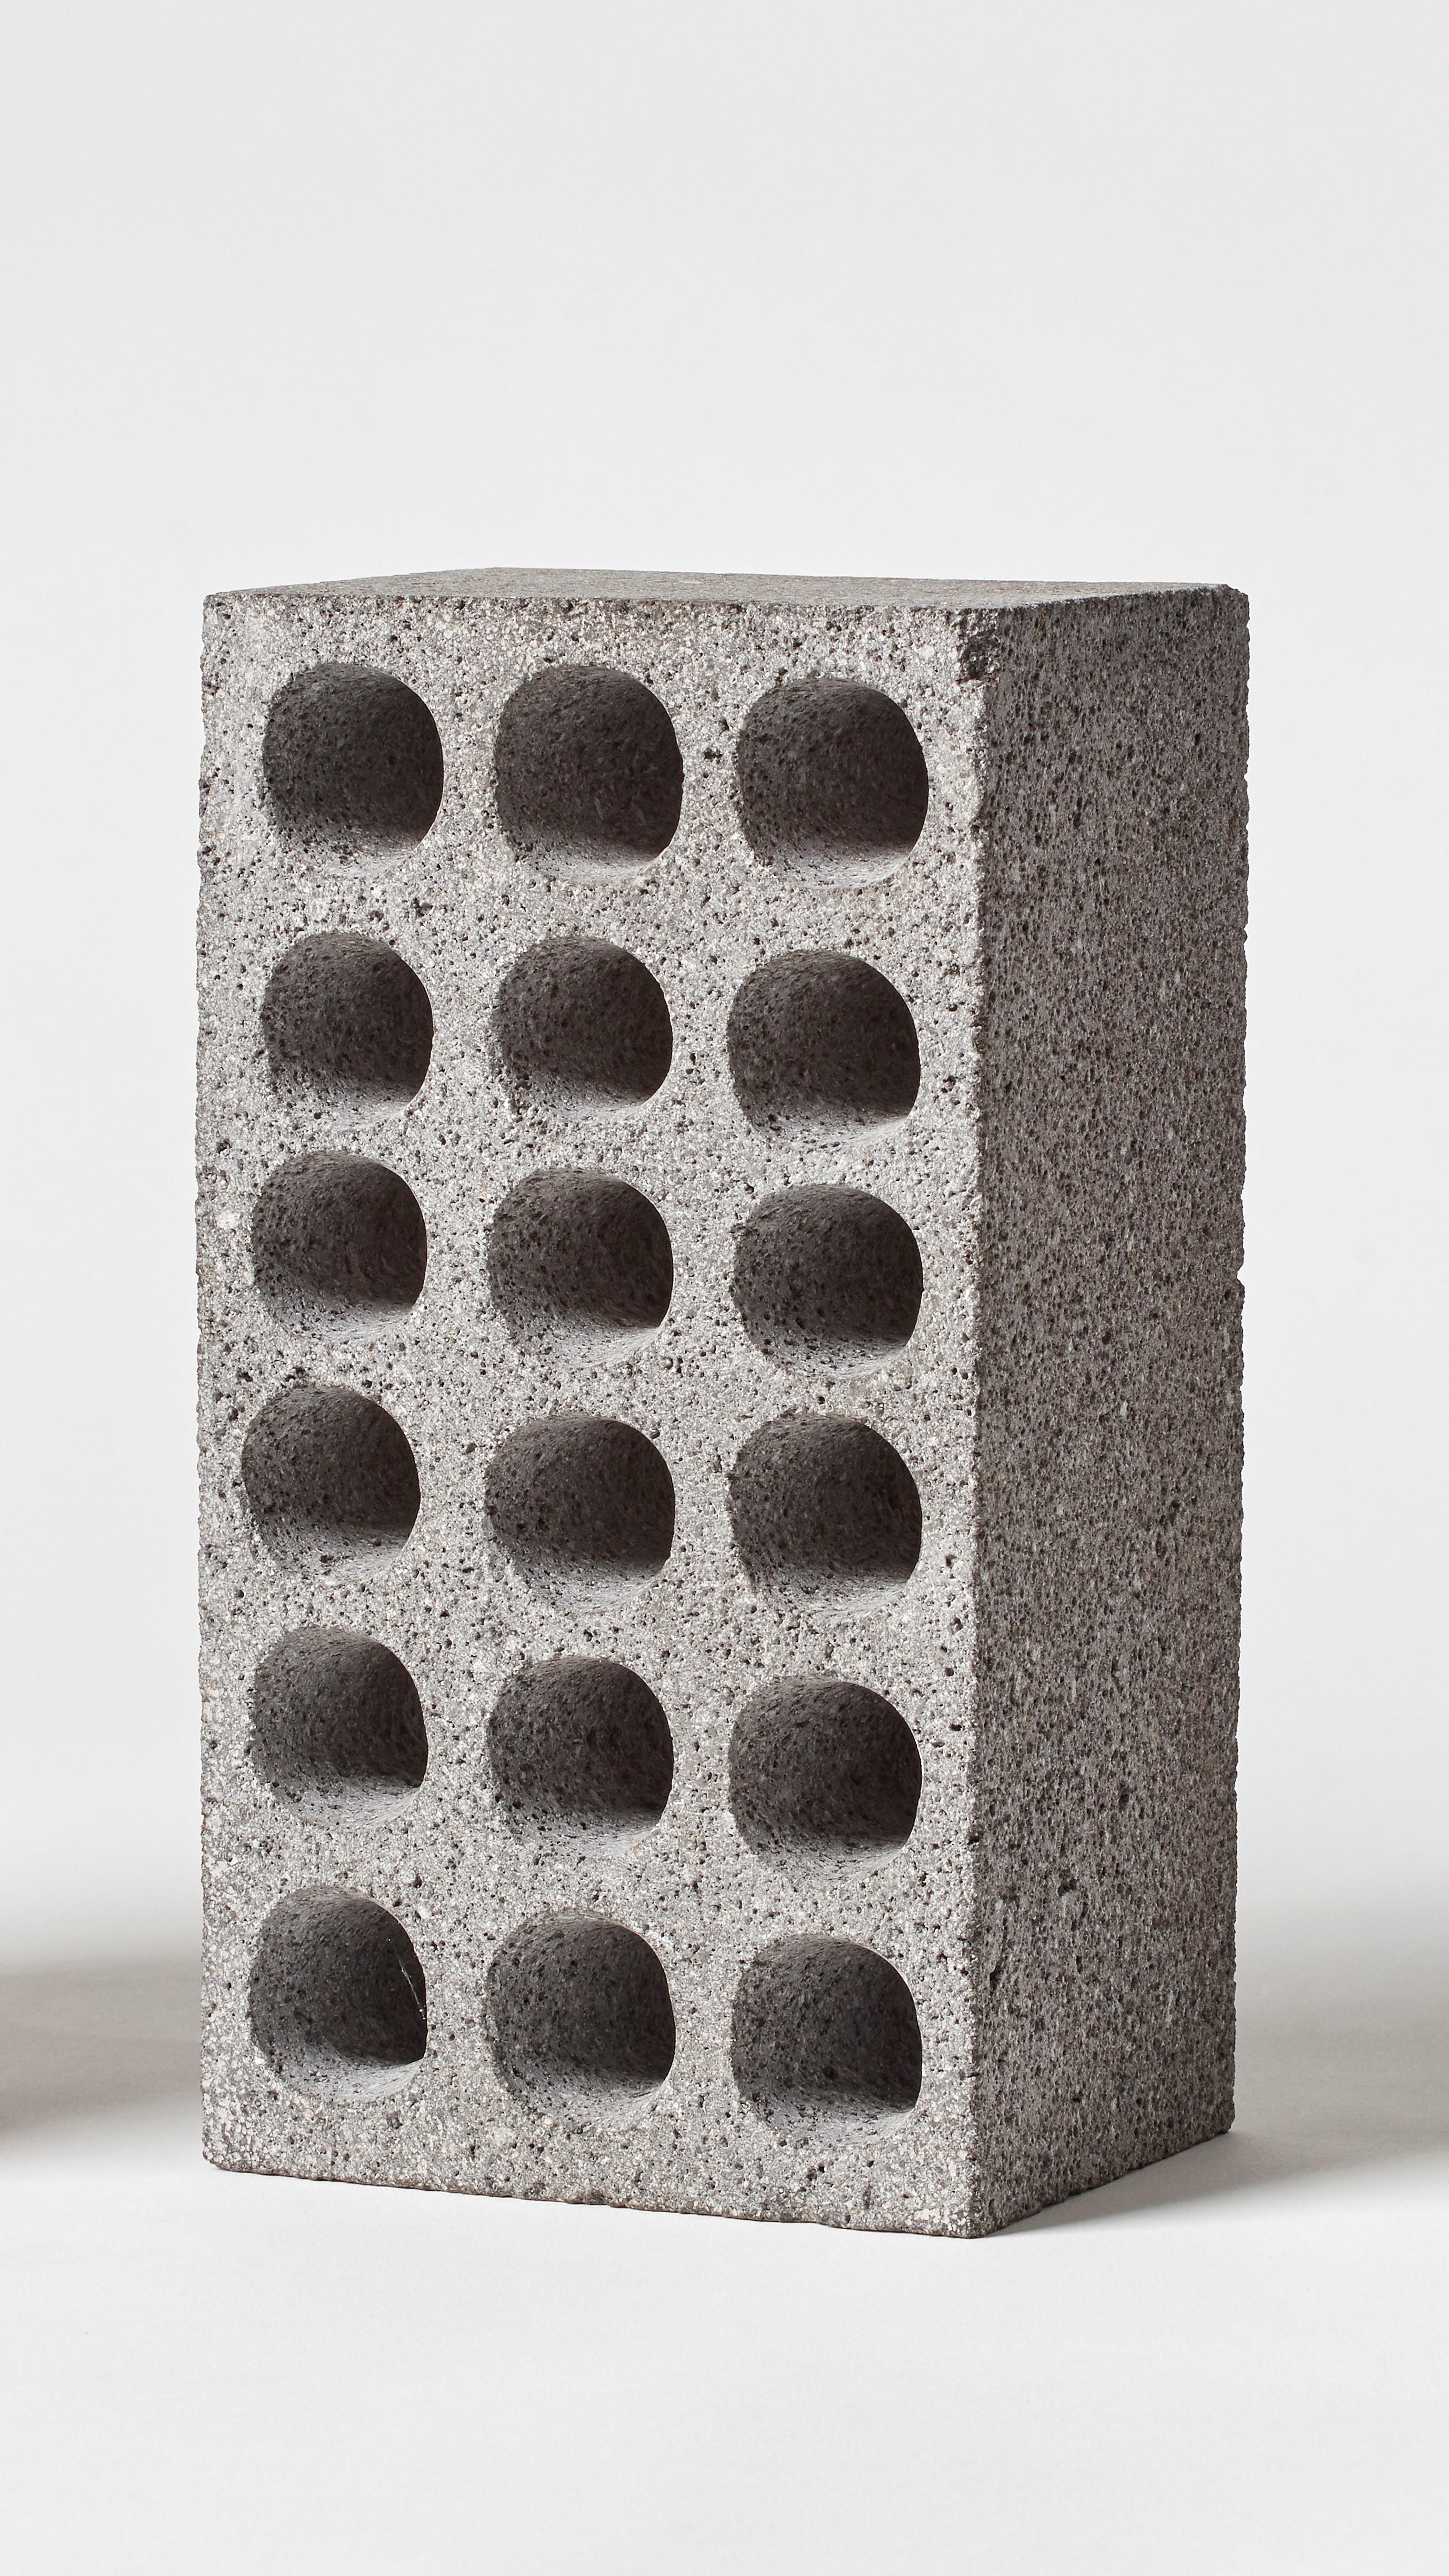 BRICK von Estudio Rafael Freyre
Abmessungen: B 12,5 T 9 x H 23 cm 
MATERIALIEN: Anden-Steine
Auch verfügbar: Andere Oberflächen verfügbar.

Der Ziegelstein ist ein allgemeines konstruktives Element, das Teil des städtischen Imaginären ist. In